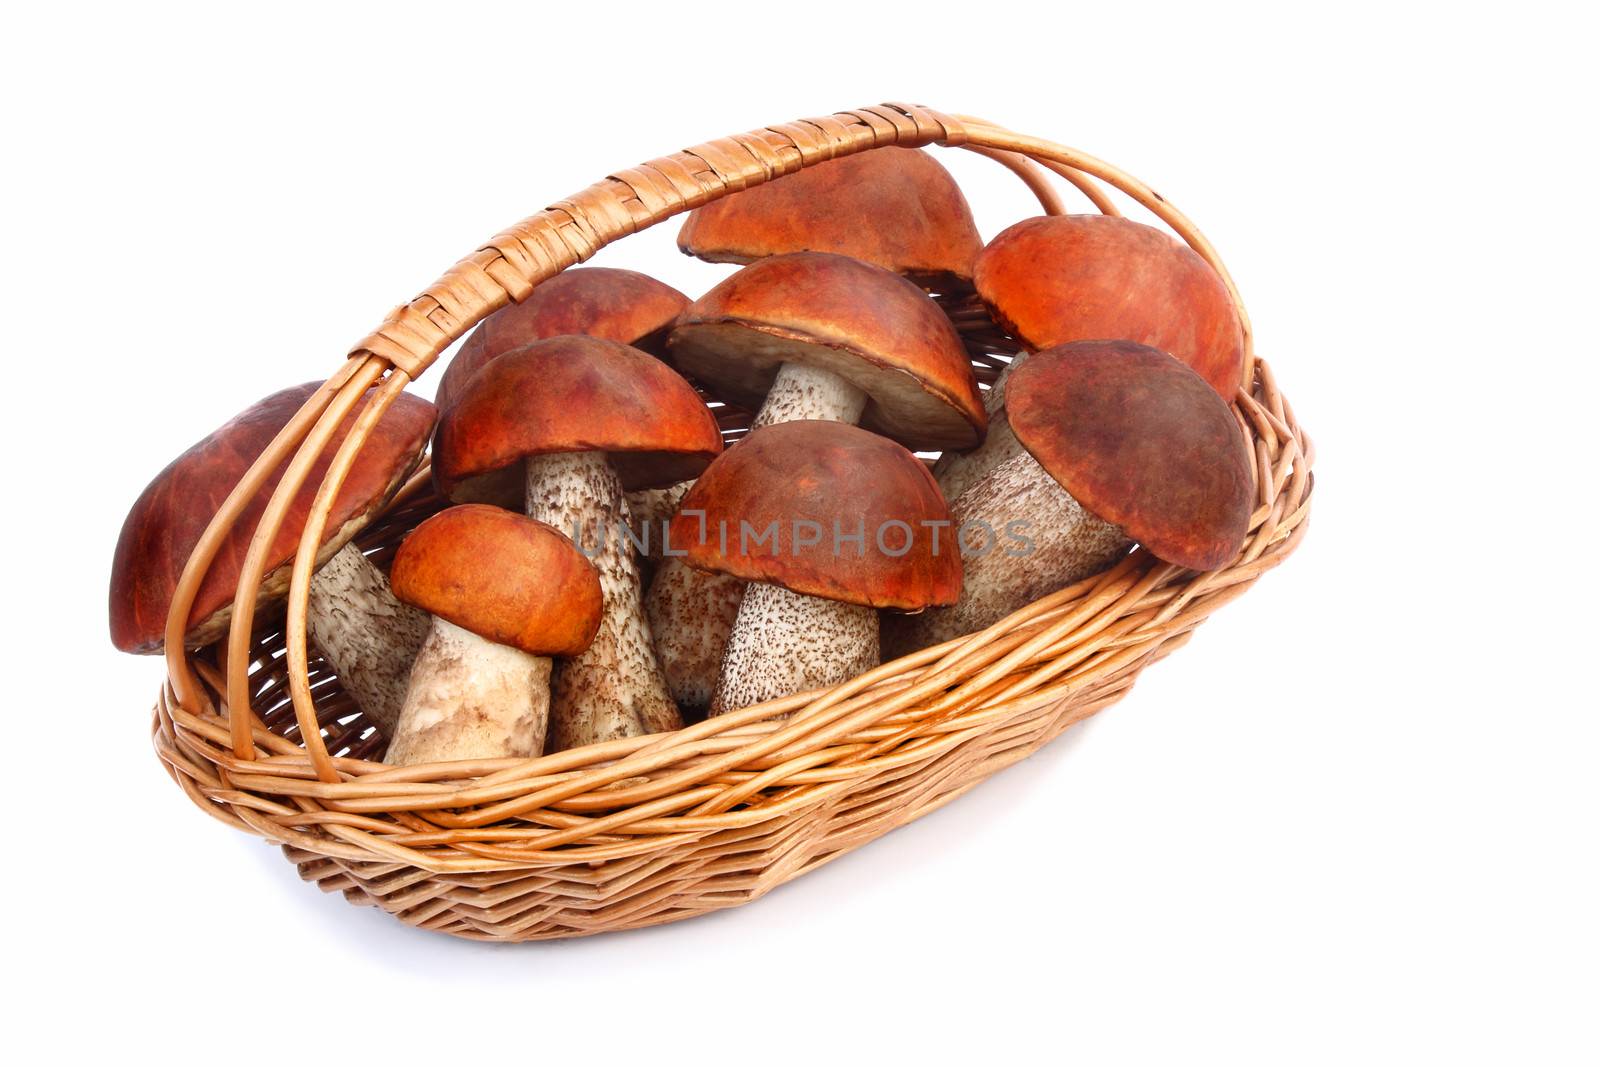 Mushrooms, aspen mushrooms in a wicker basket on a white backgro by georgina198